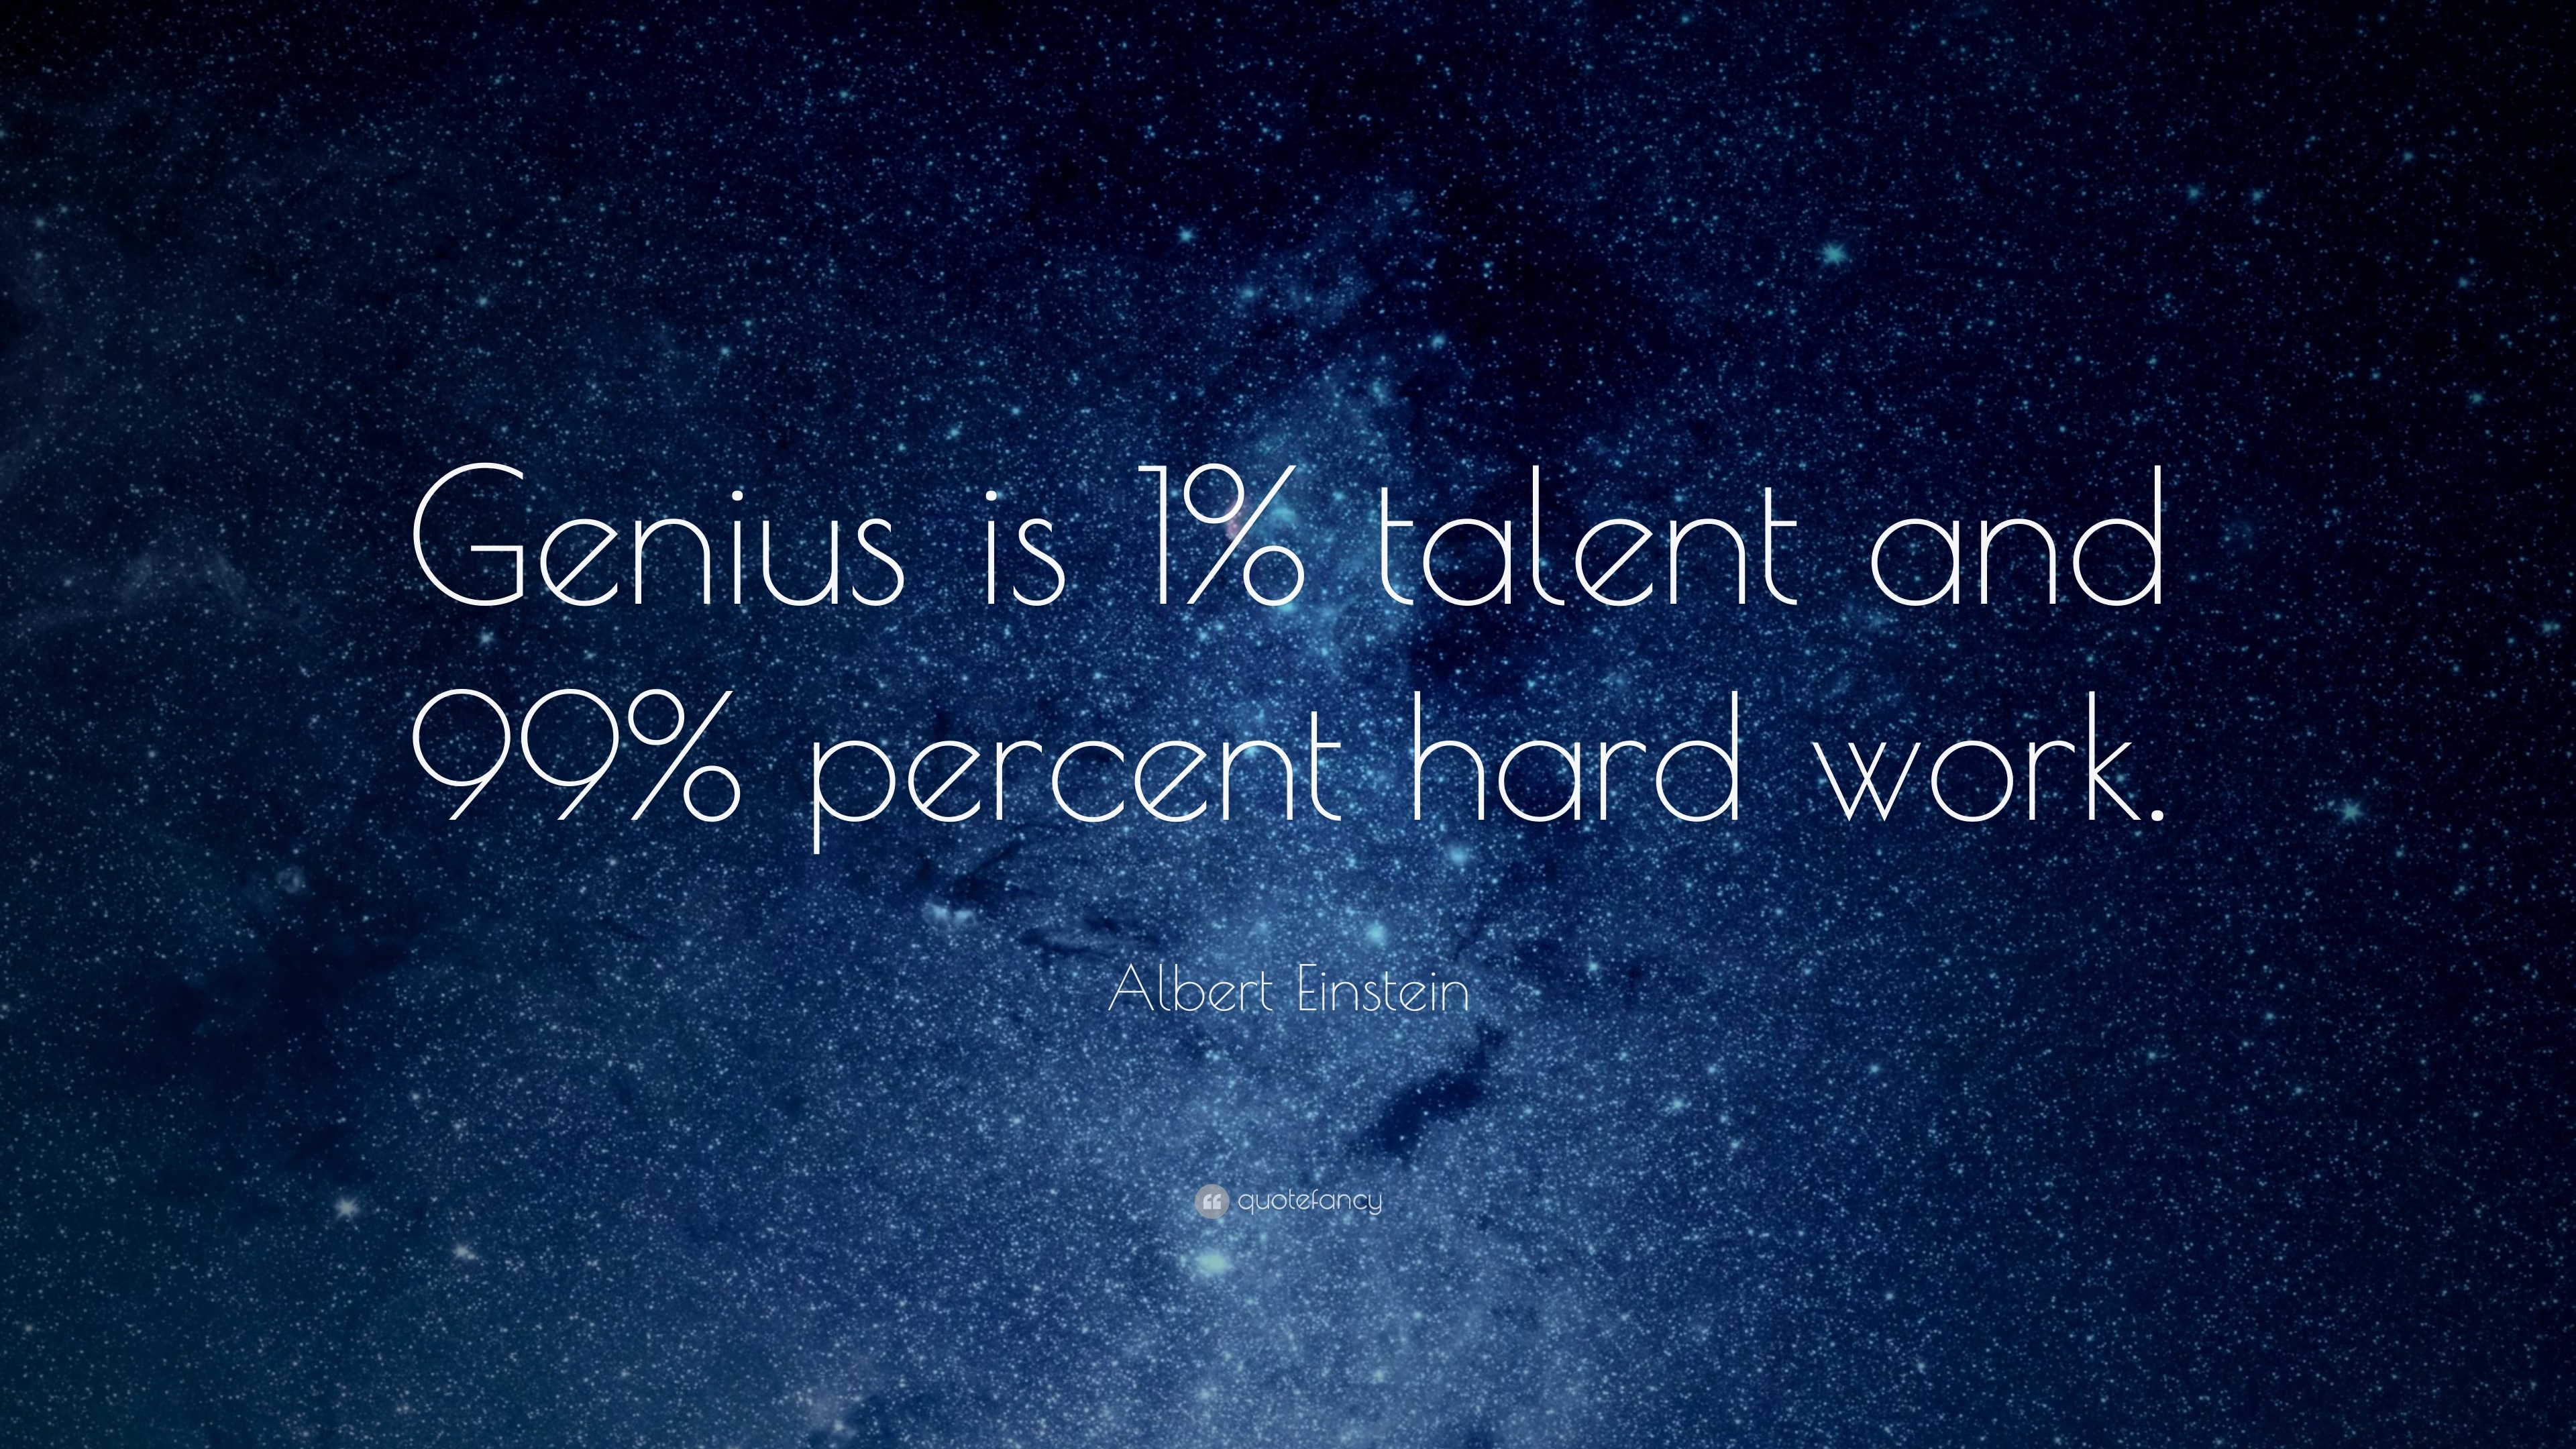 Albert Einstein Quote: “Genius is 1% talent and 99% percent hard work.”